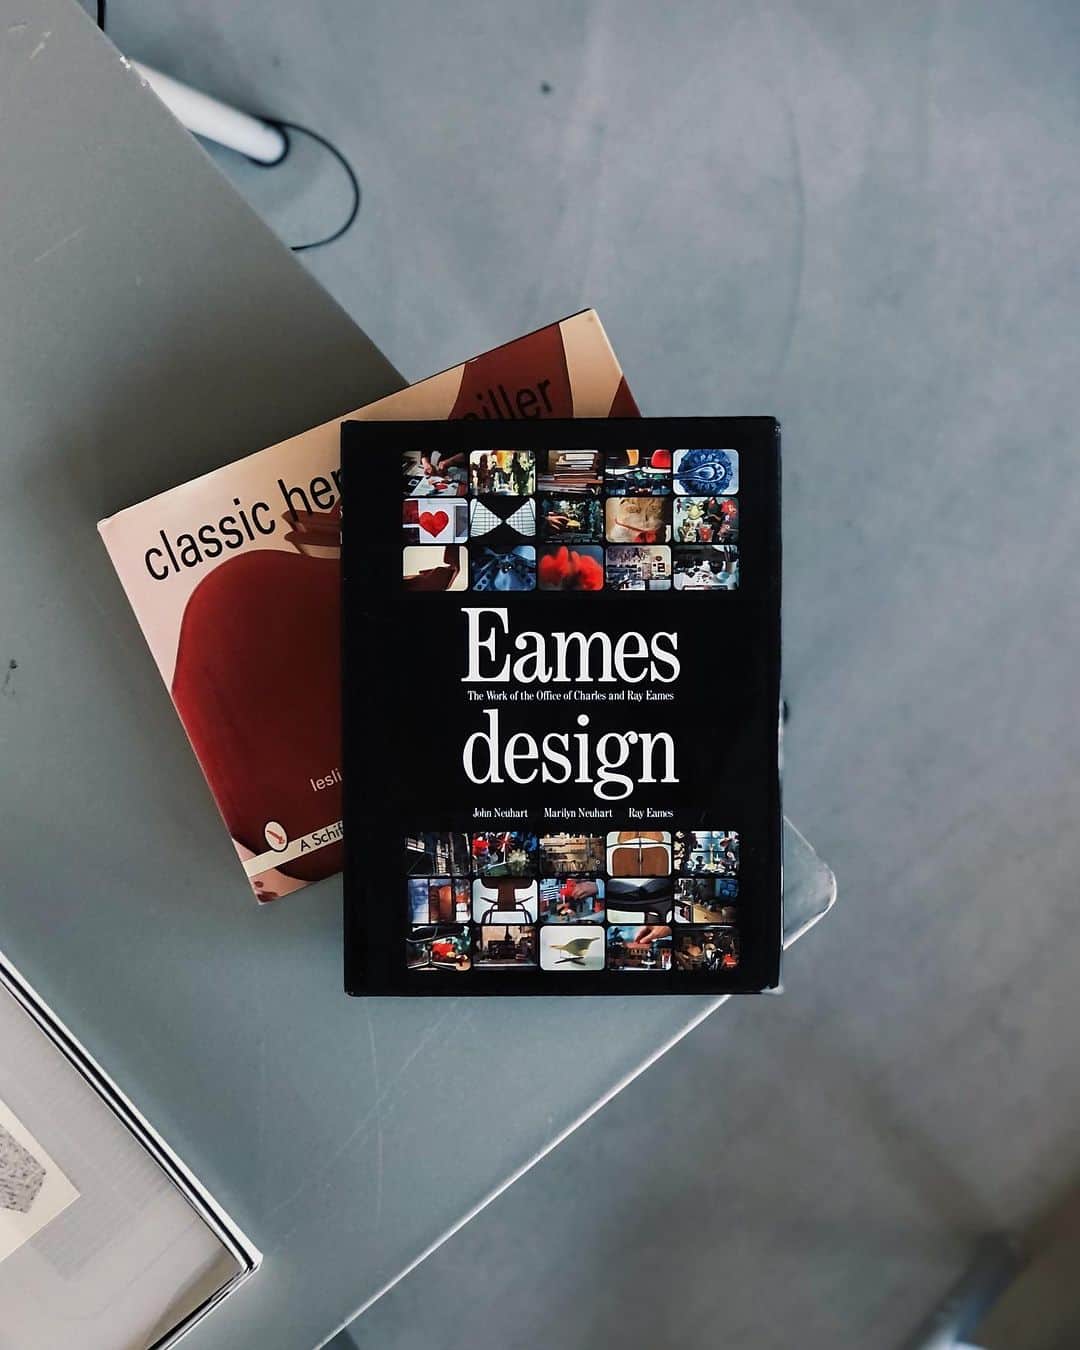 nostos booksのインスタグラム：「【本日の入荷】『今和次郎採集講義』『日本の古地図』、イームズやハーマン・ミラーの作品集、ルイス・カーンやリカルド・レゴレッタの写真資料集など40冊を入荷しました。  オンラインストアへは商品タグをタップ◯ 　 入荷本からおすすめ10選  ----------  1冊目 『Eames Design』 チャールズ・イームズ＆レイ・イームズ夫妻の仕事と作品を詳細に編纂した作品集。戦時中に開発し、成功への起爆剤となったプライウッド製の副え木、そして家具メーカー／ハーマンミラー社のためにデザインした家庭・オフィス用家具、そのほか映像作品など200点を超える作品を分析し、丁寧に解説する。   ----------  2冊目 『Classic Herman Miller』 米国に本社を置く家具メーカー／ハーマン・ミラーの作品集。チャールズ＆レイ・イームズ、ジョージ・ネルソン、イサム・ノグチら偉大なデザイナーが手がけたクラシックな家具製品を、カラーとモノクロの豊富な写真図版で紹介。   ----------  3冊目 『Ricardo Legorreta Architects』 メキシコの巨匠ルイス・バラガンのもとで学んだことでも知られる建築家、リカルド・レゴレッタの写真資料集。メキシコ、テキサス、カリフォルニアにおける25のプロジェクトをカラー写真で紹介したもの。鮮やかな色彩、漆喰の厚い質感の壁、神秘的で光に満ちた空間など、レゴレッタの個性的な美学を紐解く1冊。  ----------  4冊目 『Louis I Kahn』 20世紀を代表する建築家のひとり、ルイス・カーンの作品集。カーンの手掛けた代表的な建築物を一連のコンセプト図面、詳細な計画、建築モデルの写真、および完成した外観・内観写真とともに、年代順に掲載。   ----------  5冊目 『今和次郎採集講義』 民俗学研究者・今和次郎の回顧展図録。昭和初期の急速に大都市化していく東京の街の様子や人の生活の変化を採集・分析した「考現学」の創始者として知られる今和次郎。建築家・デザイナーとしての側面も持つ氏のスケッチや、写真、建築、デザイン図面などを幅広く収録し、その多岐にわたるユニークな活動を紹介する。デザインは菊池敦己によるもの。   ----------  6冊目 『日本の古地図』 彩色豊かな世界図、日本全図、道中図、地方図、国図、町図などの古地図を集めた一冊。本書に掲載された古地図にはインドを中心にした仏教式世界地図や、豊臣秀吉所持の扇面図など、重要文化財になっているものも多く、当時の世界および日本がどのように世界を見ていたかといった意味でも興味深い。  ----------  7冊目 『Nordic Light: Mordern Scandinavian Architecture』 季節によって極端に変わる日照時間を考慮した設計や、木材を中心にした素材、高度に洗練された建築技術など、日本の建築に大きな影響を与えているスカンジナビアの建築を紹介する写真資料集。プロジェクトを詳細に掲載するとともに、建築の歴史や参考文献、建築家名鑑、観光スポットなども収録。   ----------  8冊目 『紅毛渡り 江戸更紗』 染織研究家、浦野理一によるオランダ更紗の写真資料集。江戸後期に渡来し、庶民に人気を博したオランダ更紗裂約1200点をカラー図版で収録。明快多彩な染色の美しさを紹介。  ----------  9冊目 『工芸青花 2号』 青花の会が発行する骨董・工芸・建築誌「工芸青花」2号。フランスのモントワール・シュル・ル・ロワールのサン・ジル聖堂を紹介する巻頭特集のほか、川瀬敏郎『仏教美術と花』、昔の糸『母の糸/千葉望』、意中の美術館『フリック・コレクションの巻/中村好文』、うつわのはじまり『縄文土器/赤木明登』などを収録。 限定1200部。  ----------  10冊目 『物には心がある。』 民俗学者・民俗民具研究家の、田中忠三郎によるエッセイ集。自ら蒐集した貴重なコレクションの写真とともに、消えゆく生活道具と、作り手の思いに魅せられた人生について綴る。「麻の腰巻き、そして女性下着の研究」「鮭皮のブーツは靴底に背ビレ」「・縄文時代に行き交った、物、情報、そして恋」などを収録。   ----------------------  店舗情報はこちら @nostosbooks  ----------------------  オンラインストアは毎日19時更新○  ----------------------  #nostosbooks #ノストスブックス #祖師ヶ谷大蔵 #砧」